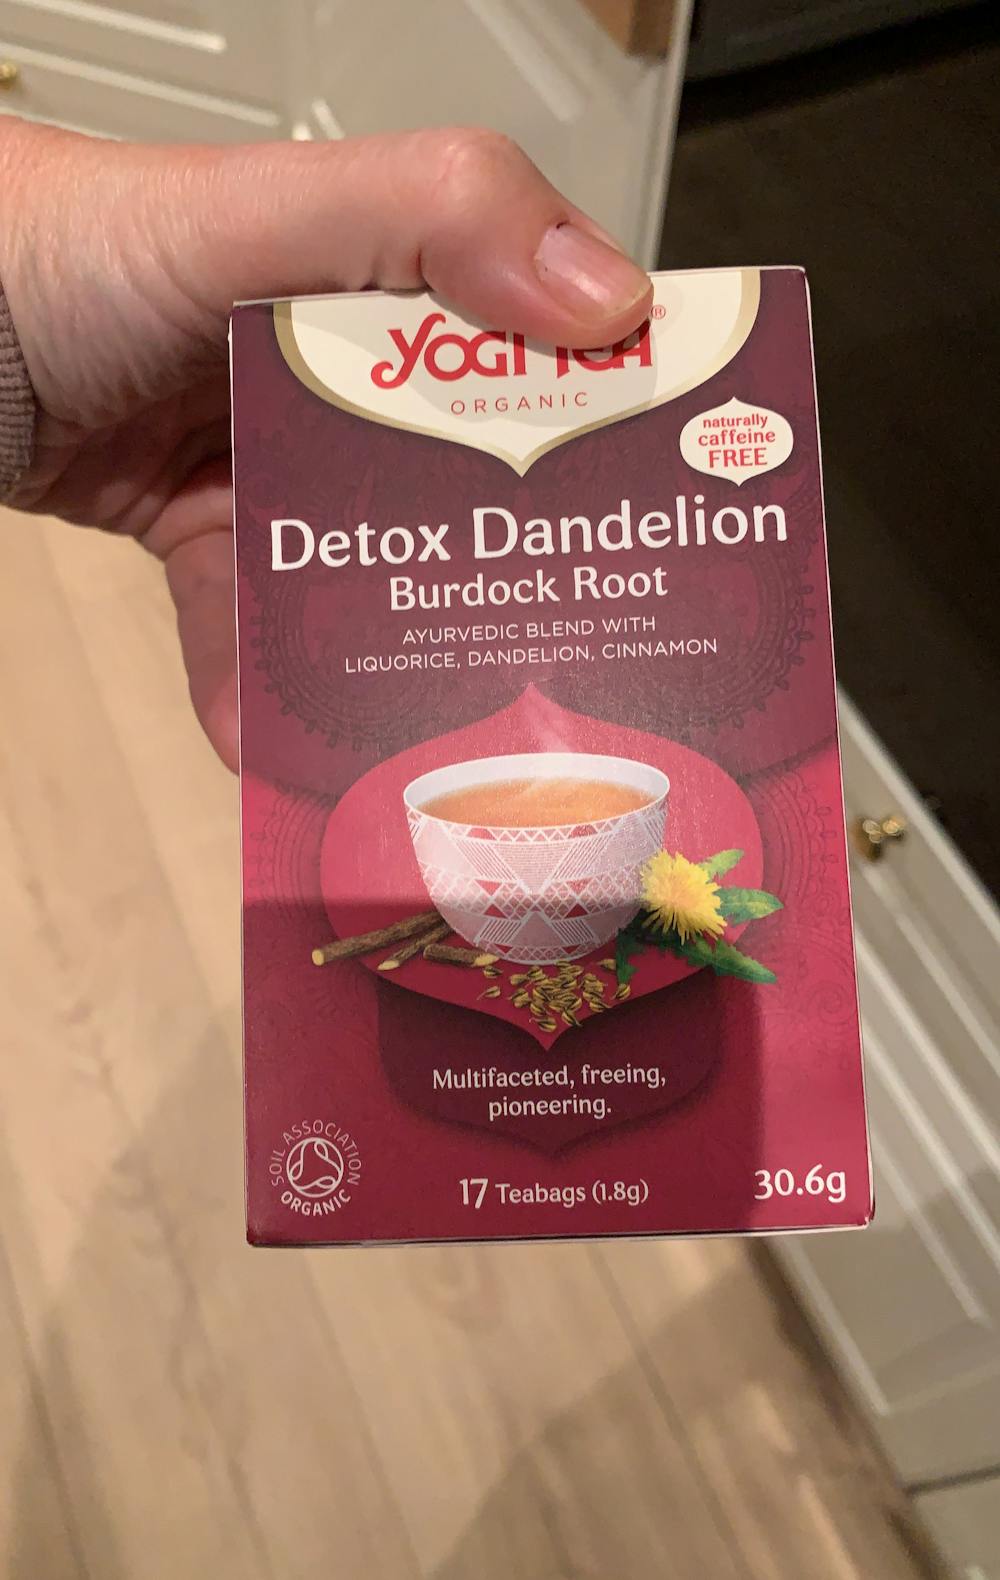 Detox Dandelion, burdock root, Yogi tea